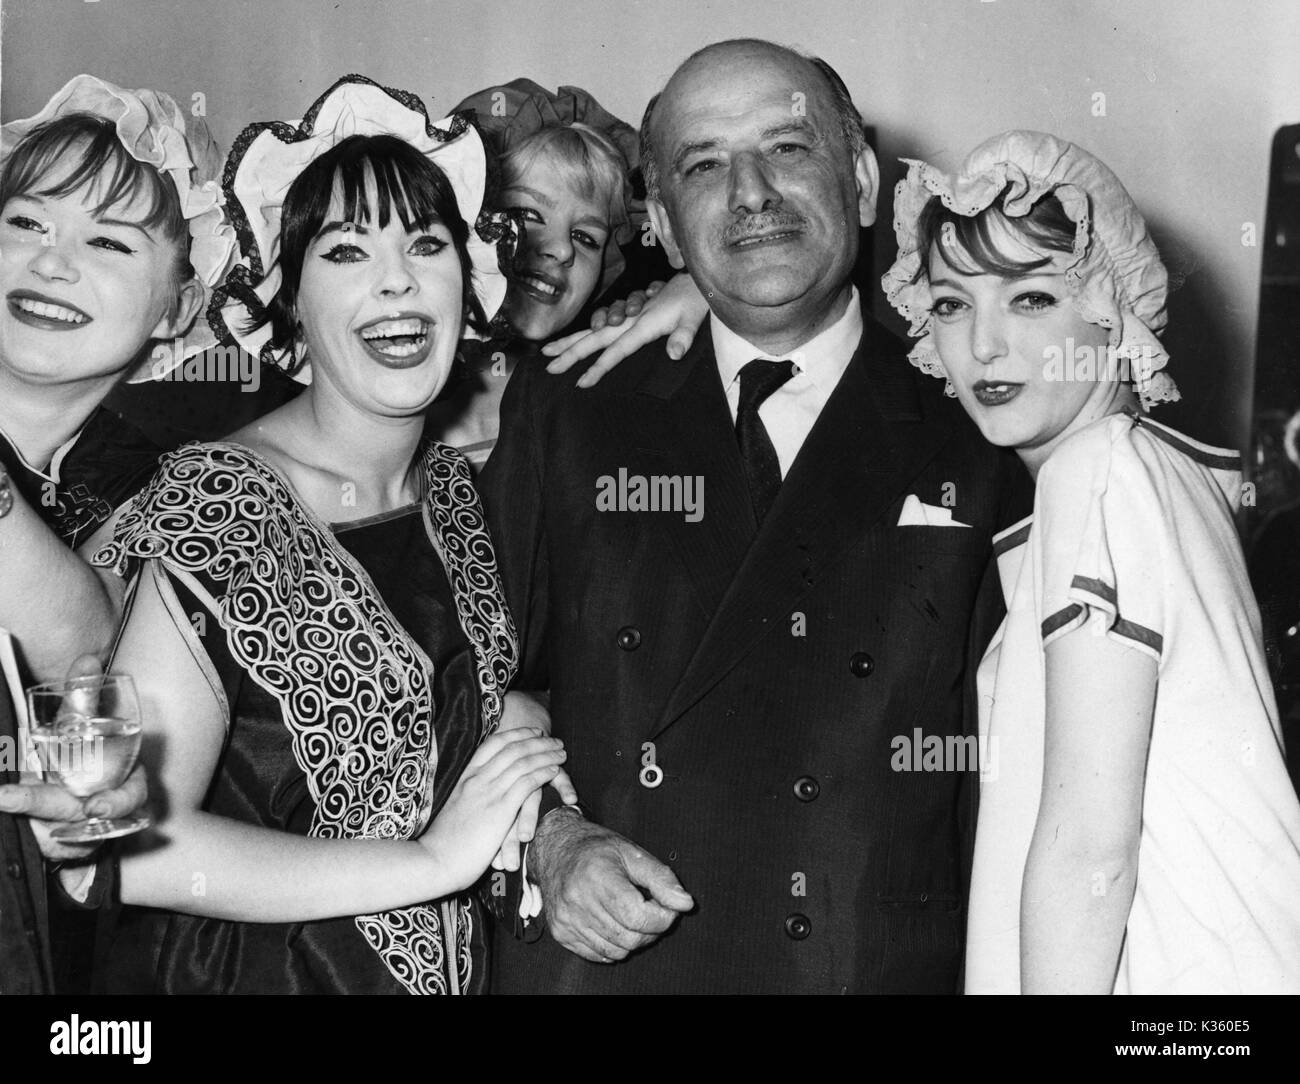 MICHAEL BALCON, produttore ragazze da Gargoyle Club, vestito come Mack Sennett bellezze di balneazione, si affollano attorno a Sir Michael Balcon in apertura della mostra ' UN SECOLO DI IMMAGINI IN MOVIMENTO", Piccadilly Gallery, luglio 1961. Foto Stock